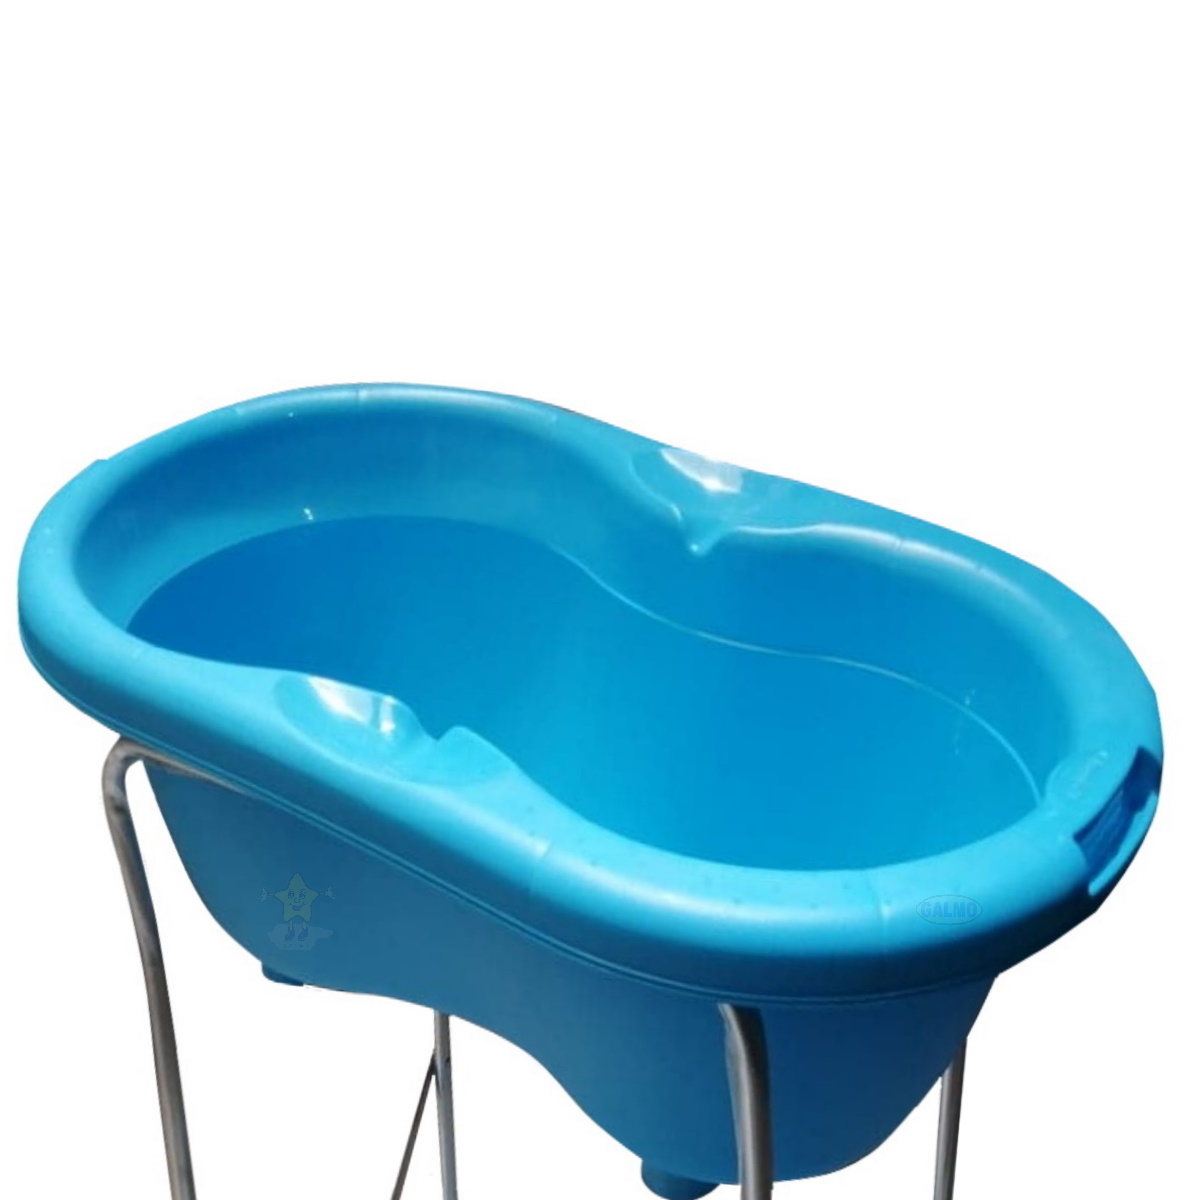 Bañera para bebé Galzerano con soporte y cojín de baño, color bola azul